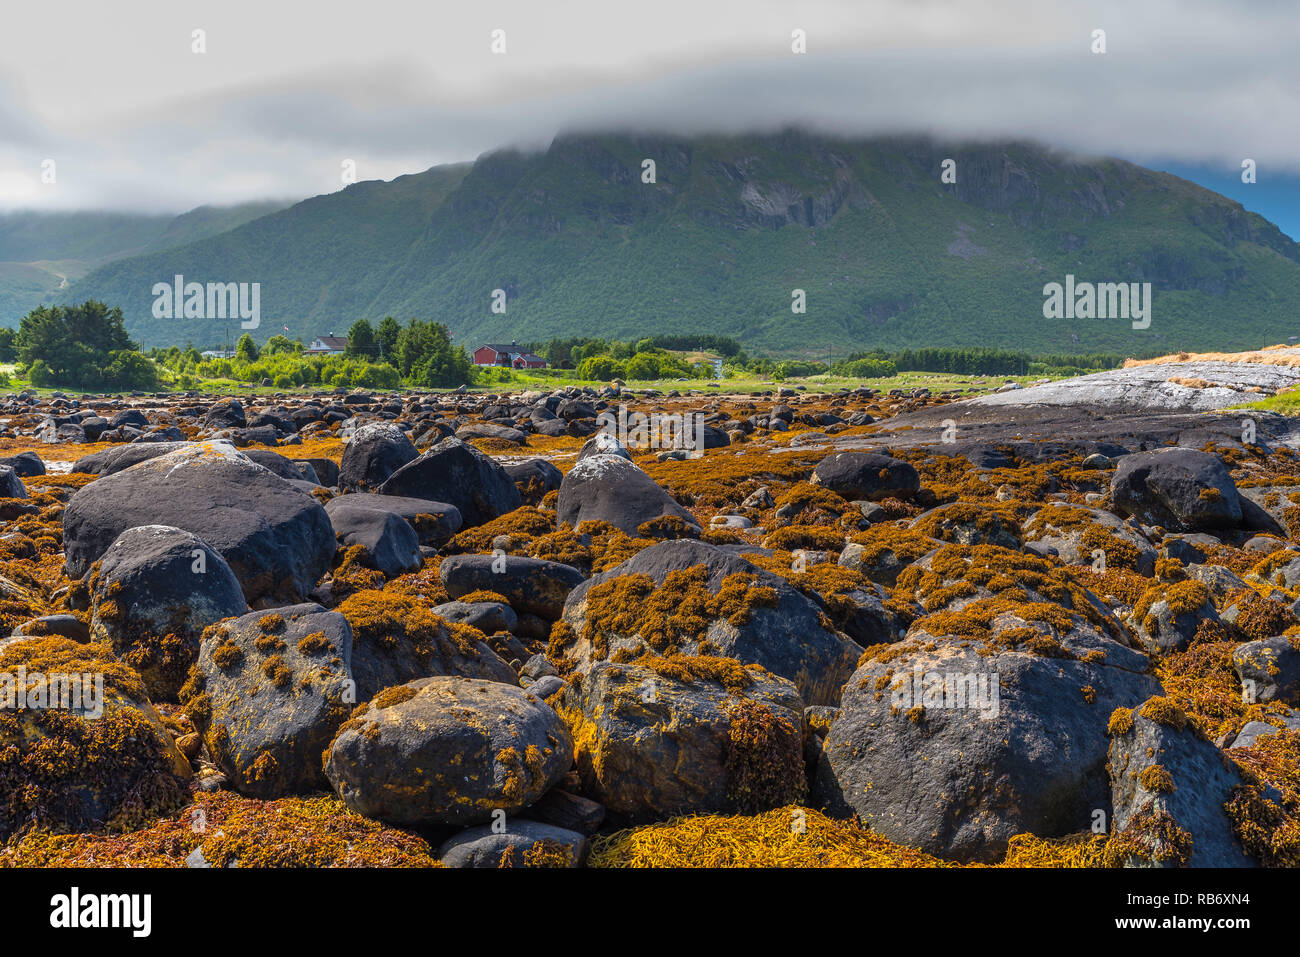 Vue de la côte avec des rochers couverts d'un enchevêtrement de végétation marine avec des montagnes en arrière-plan sous les nuages. La Norvège, autour de Vevang. Banque D'Images